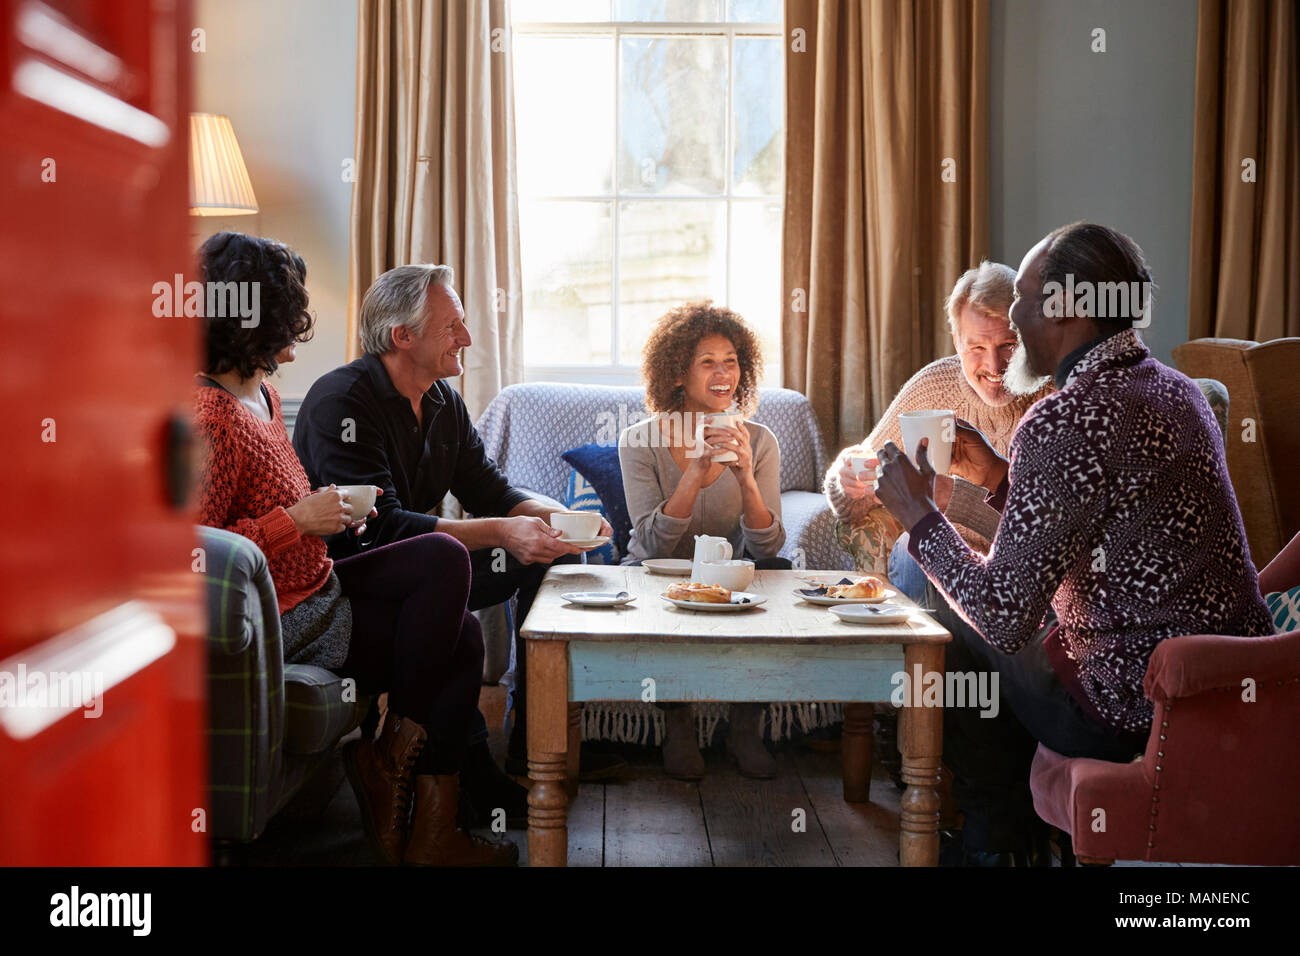 Grupo de mediana edad reunión de amigos en torno a una mesa en la cafetería. Foto de stock